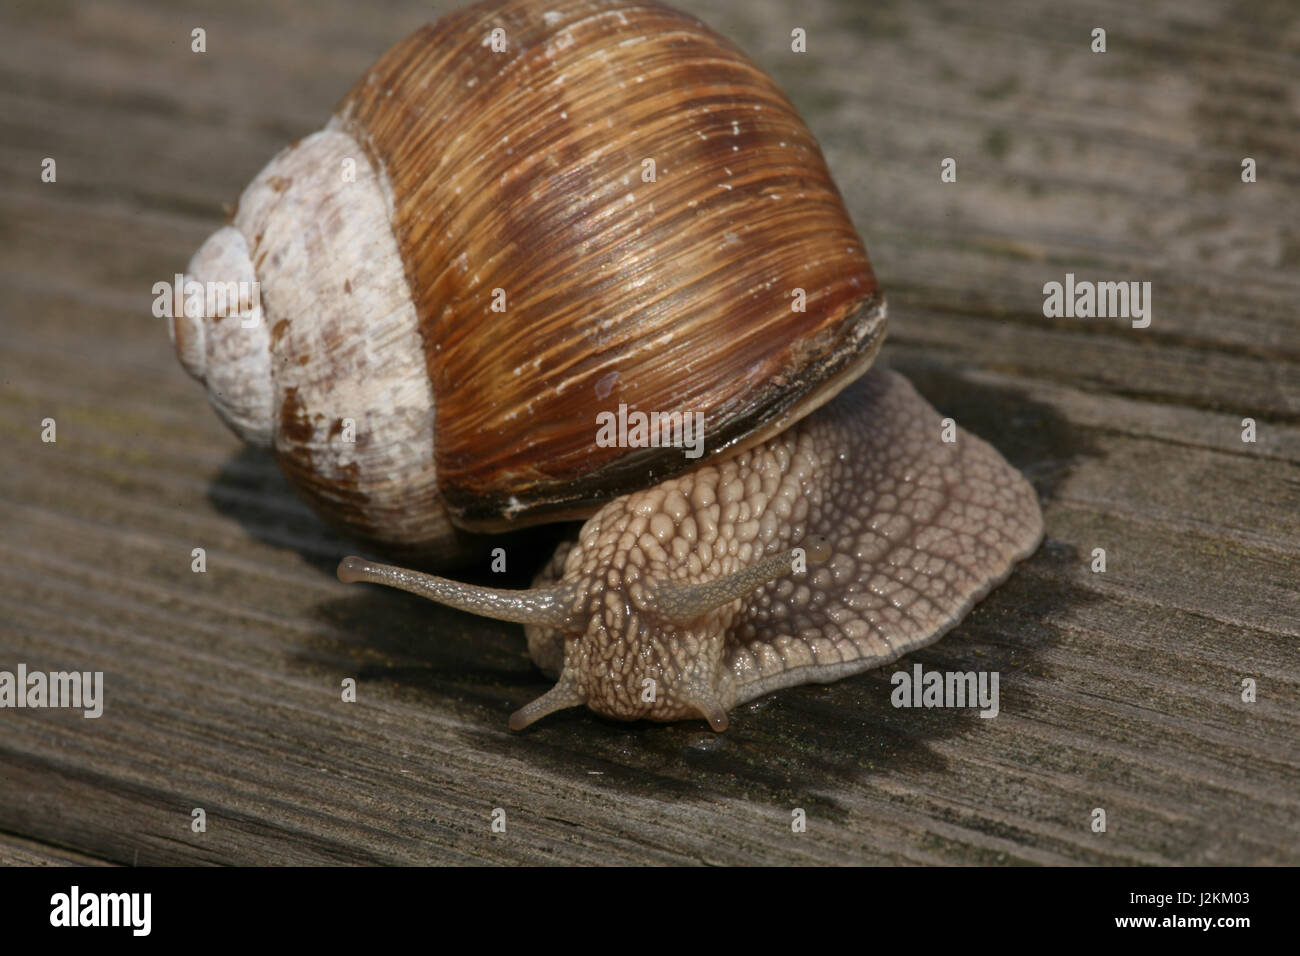 snail on wood Stock Photo